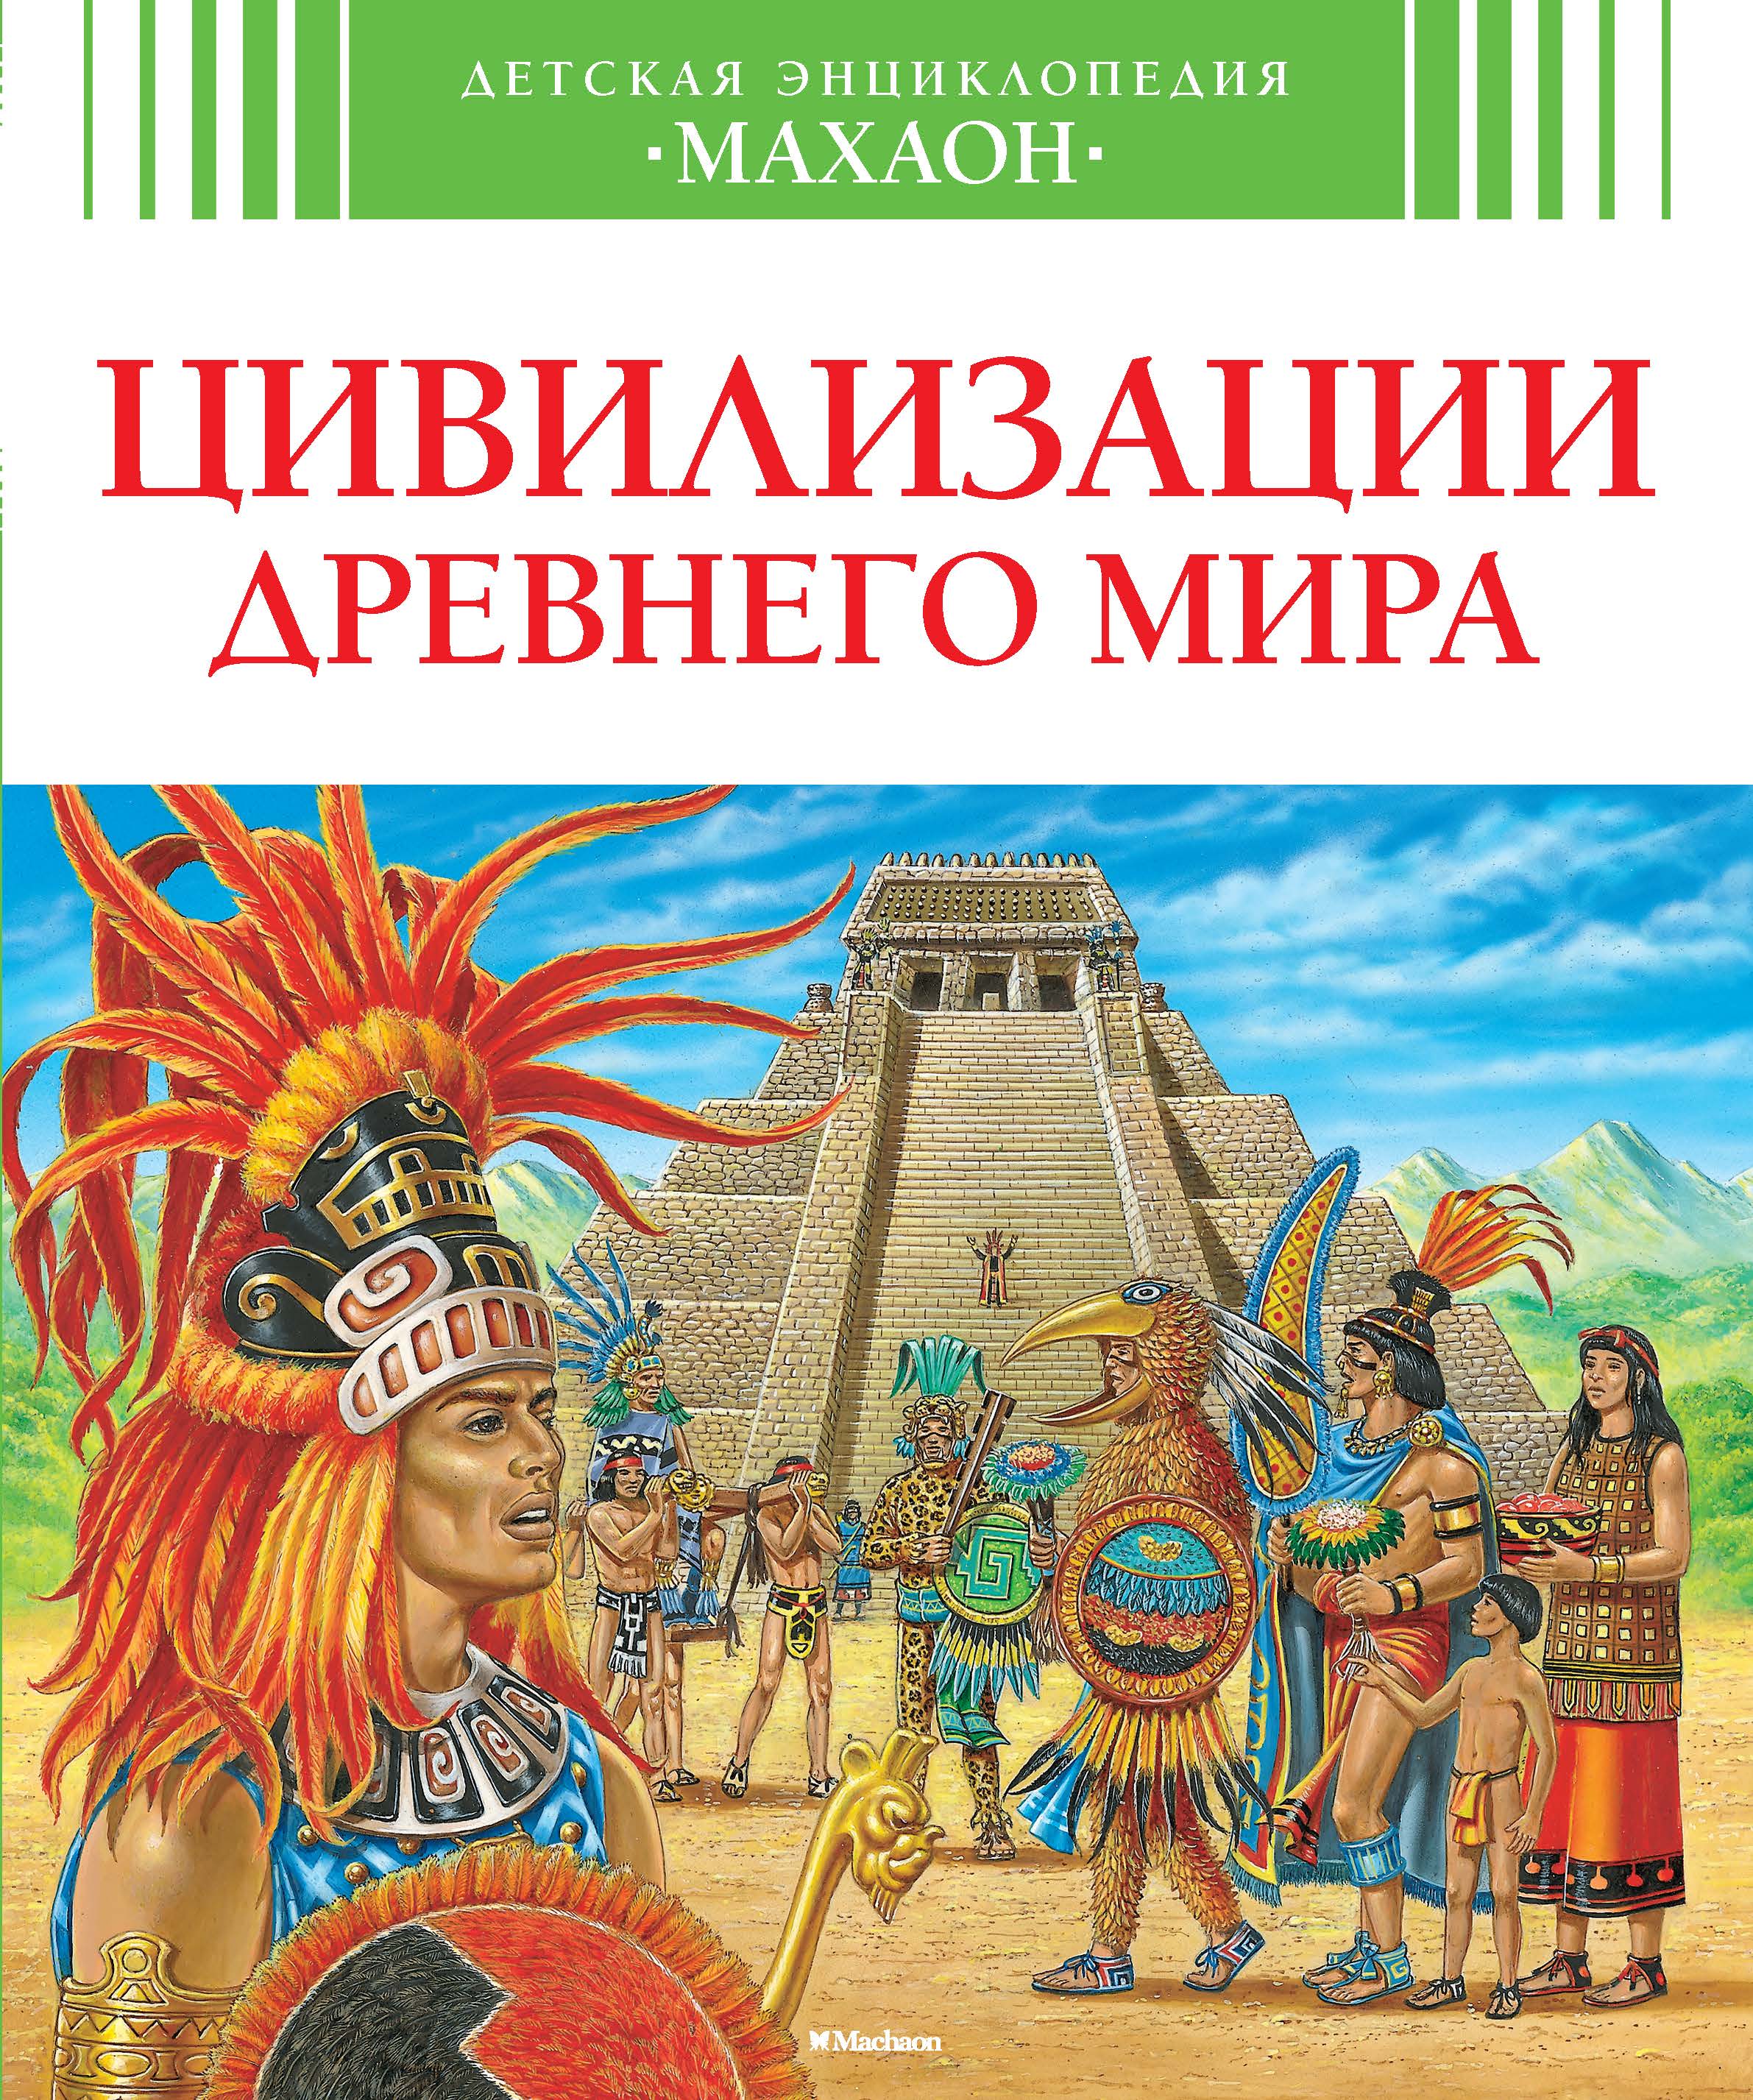 Детская энциклопедия Цивилизации древнего мира "Махаон"